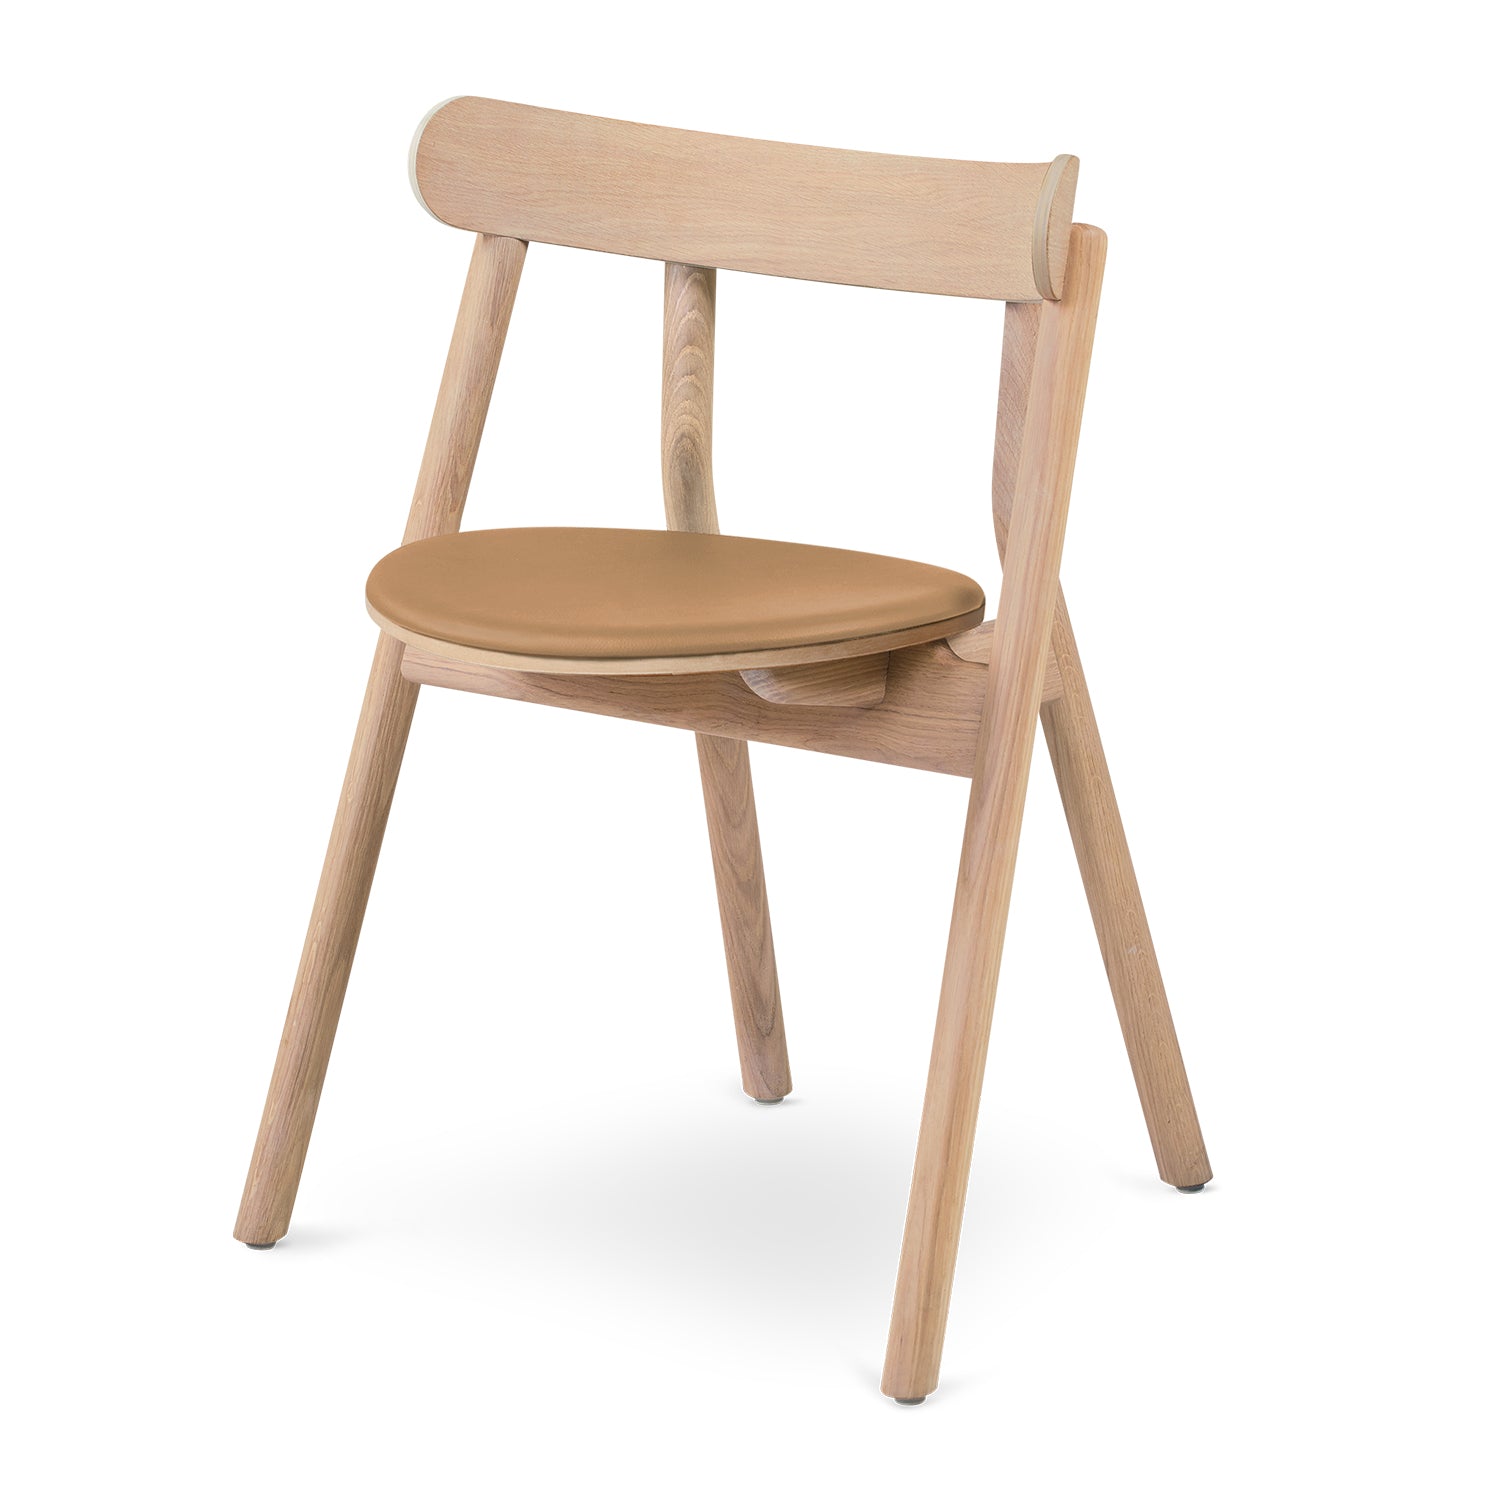 Oaki Dining Chair - The Design Choice